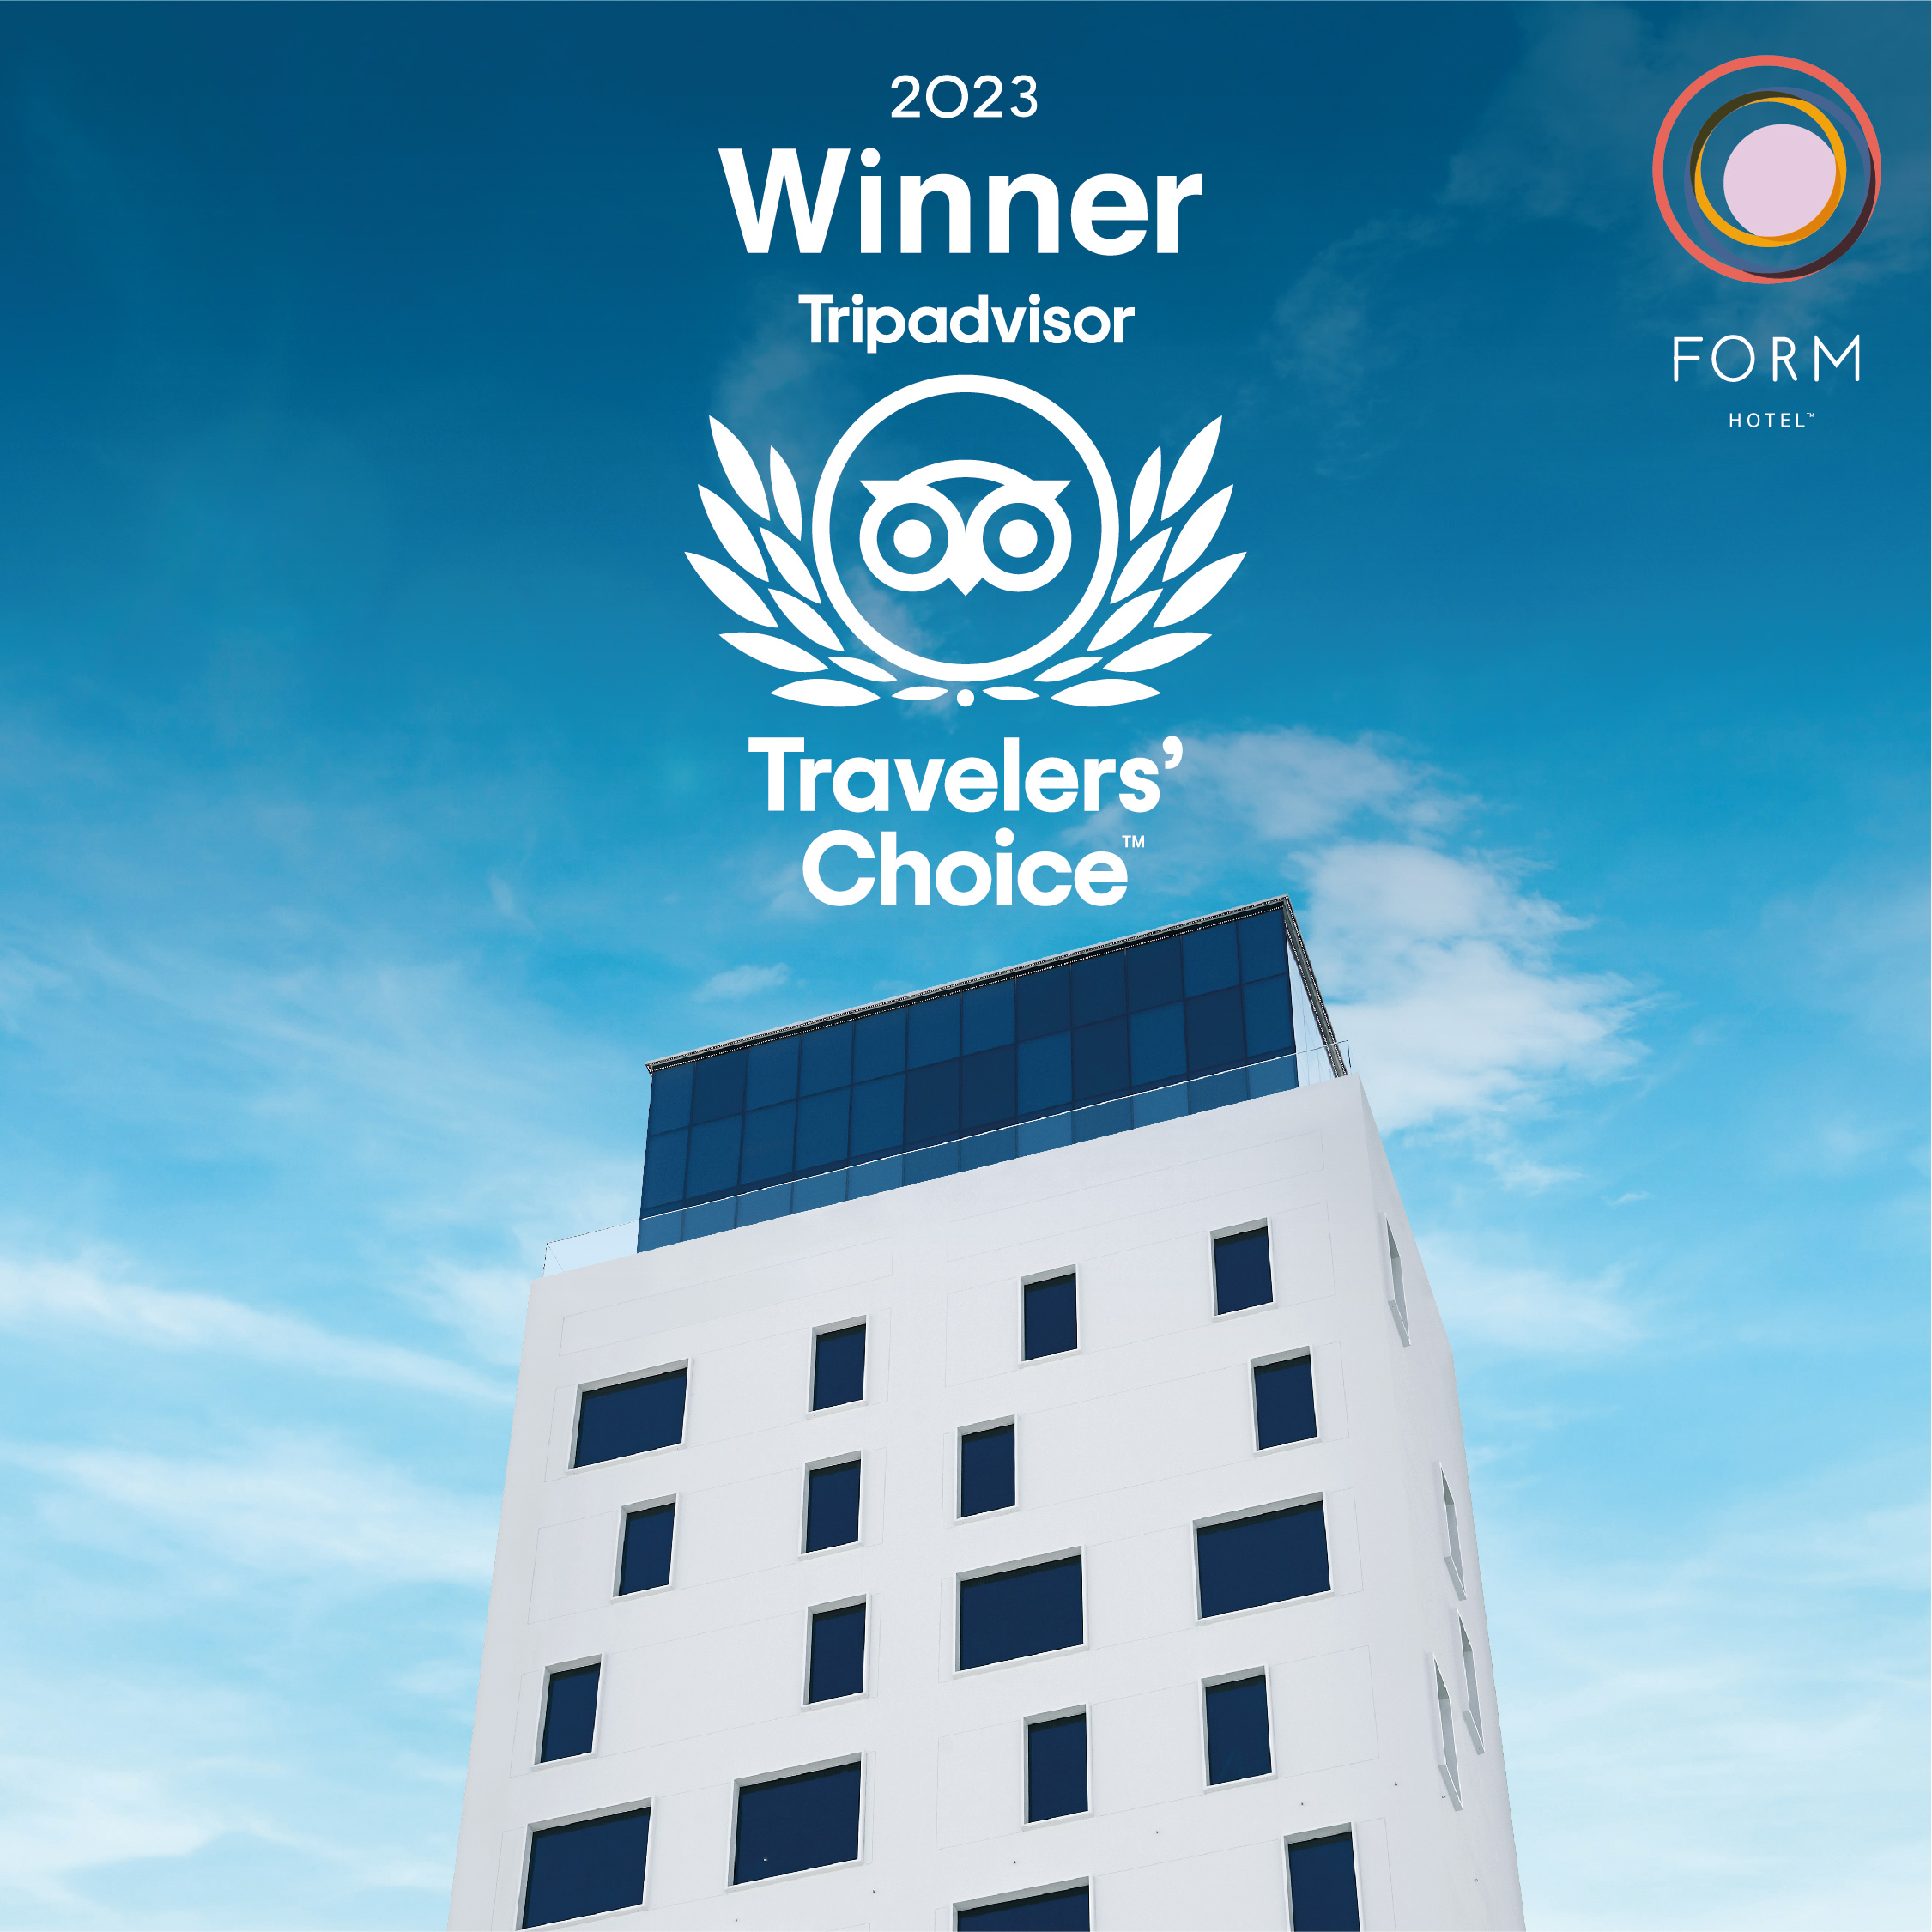 فندق فورم يفوز بجائزة "اختيار المسافر" من موقع تريب أدفايزر 